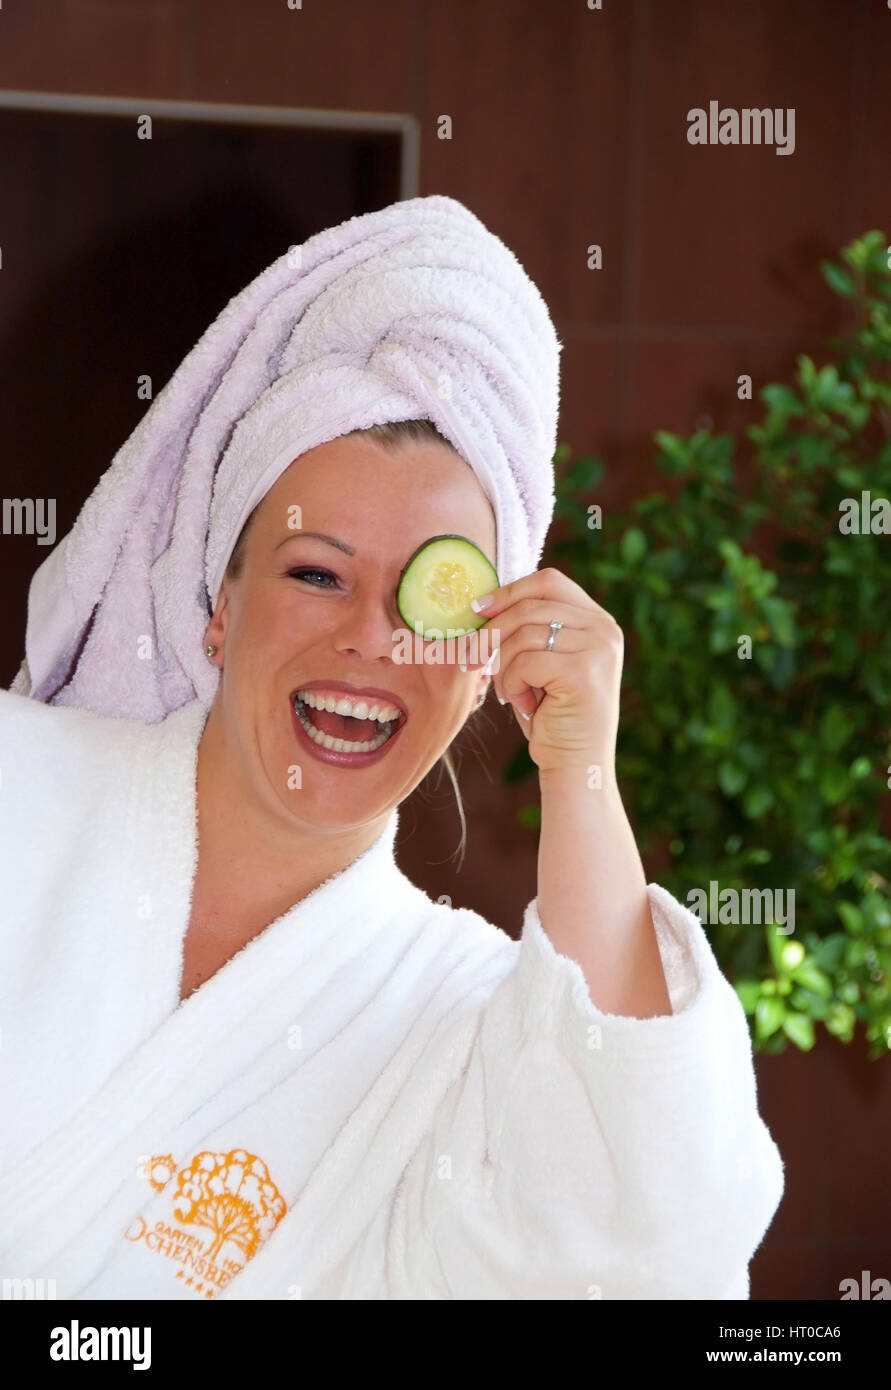 Junge, vitale Frau h?lt sich Gurkenscheibe vor das Gesicht - young, vital woman with cucumber Stock Photo